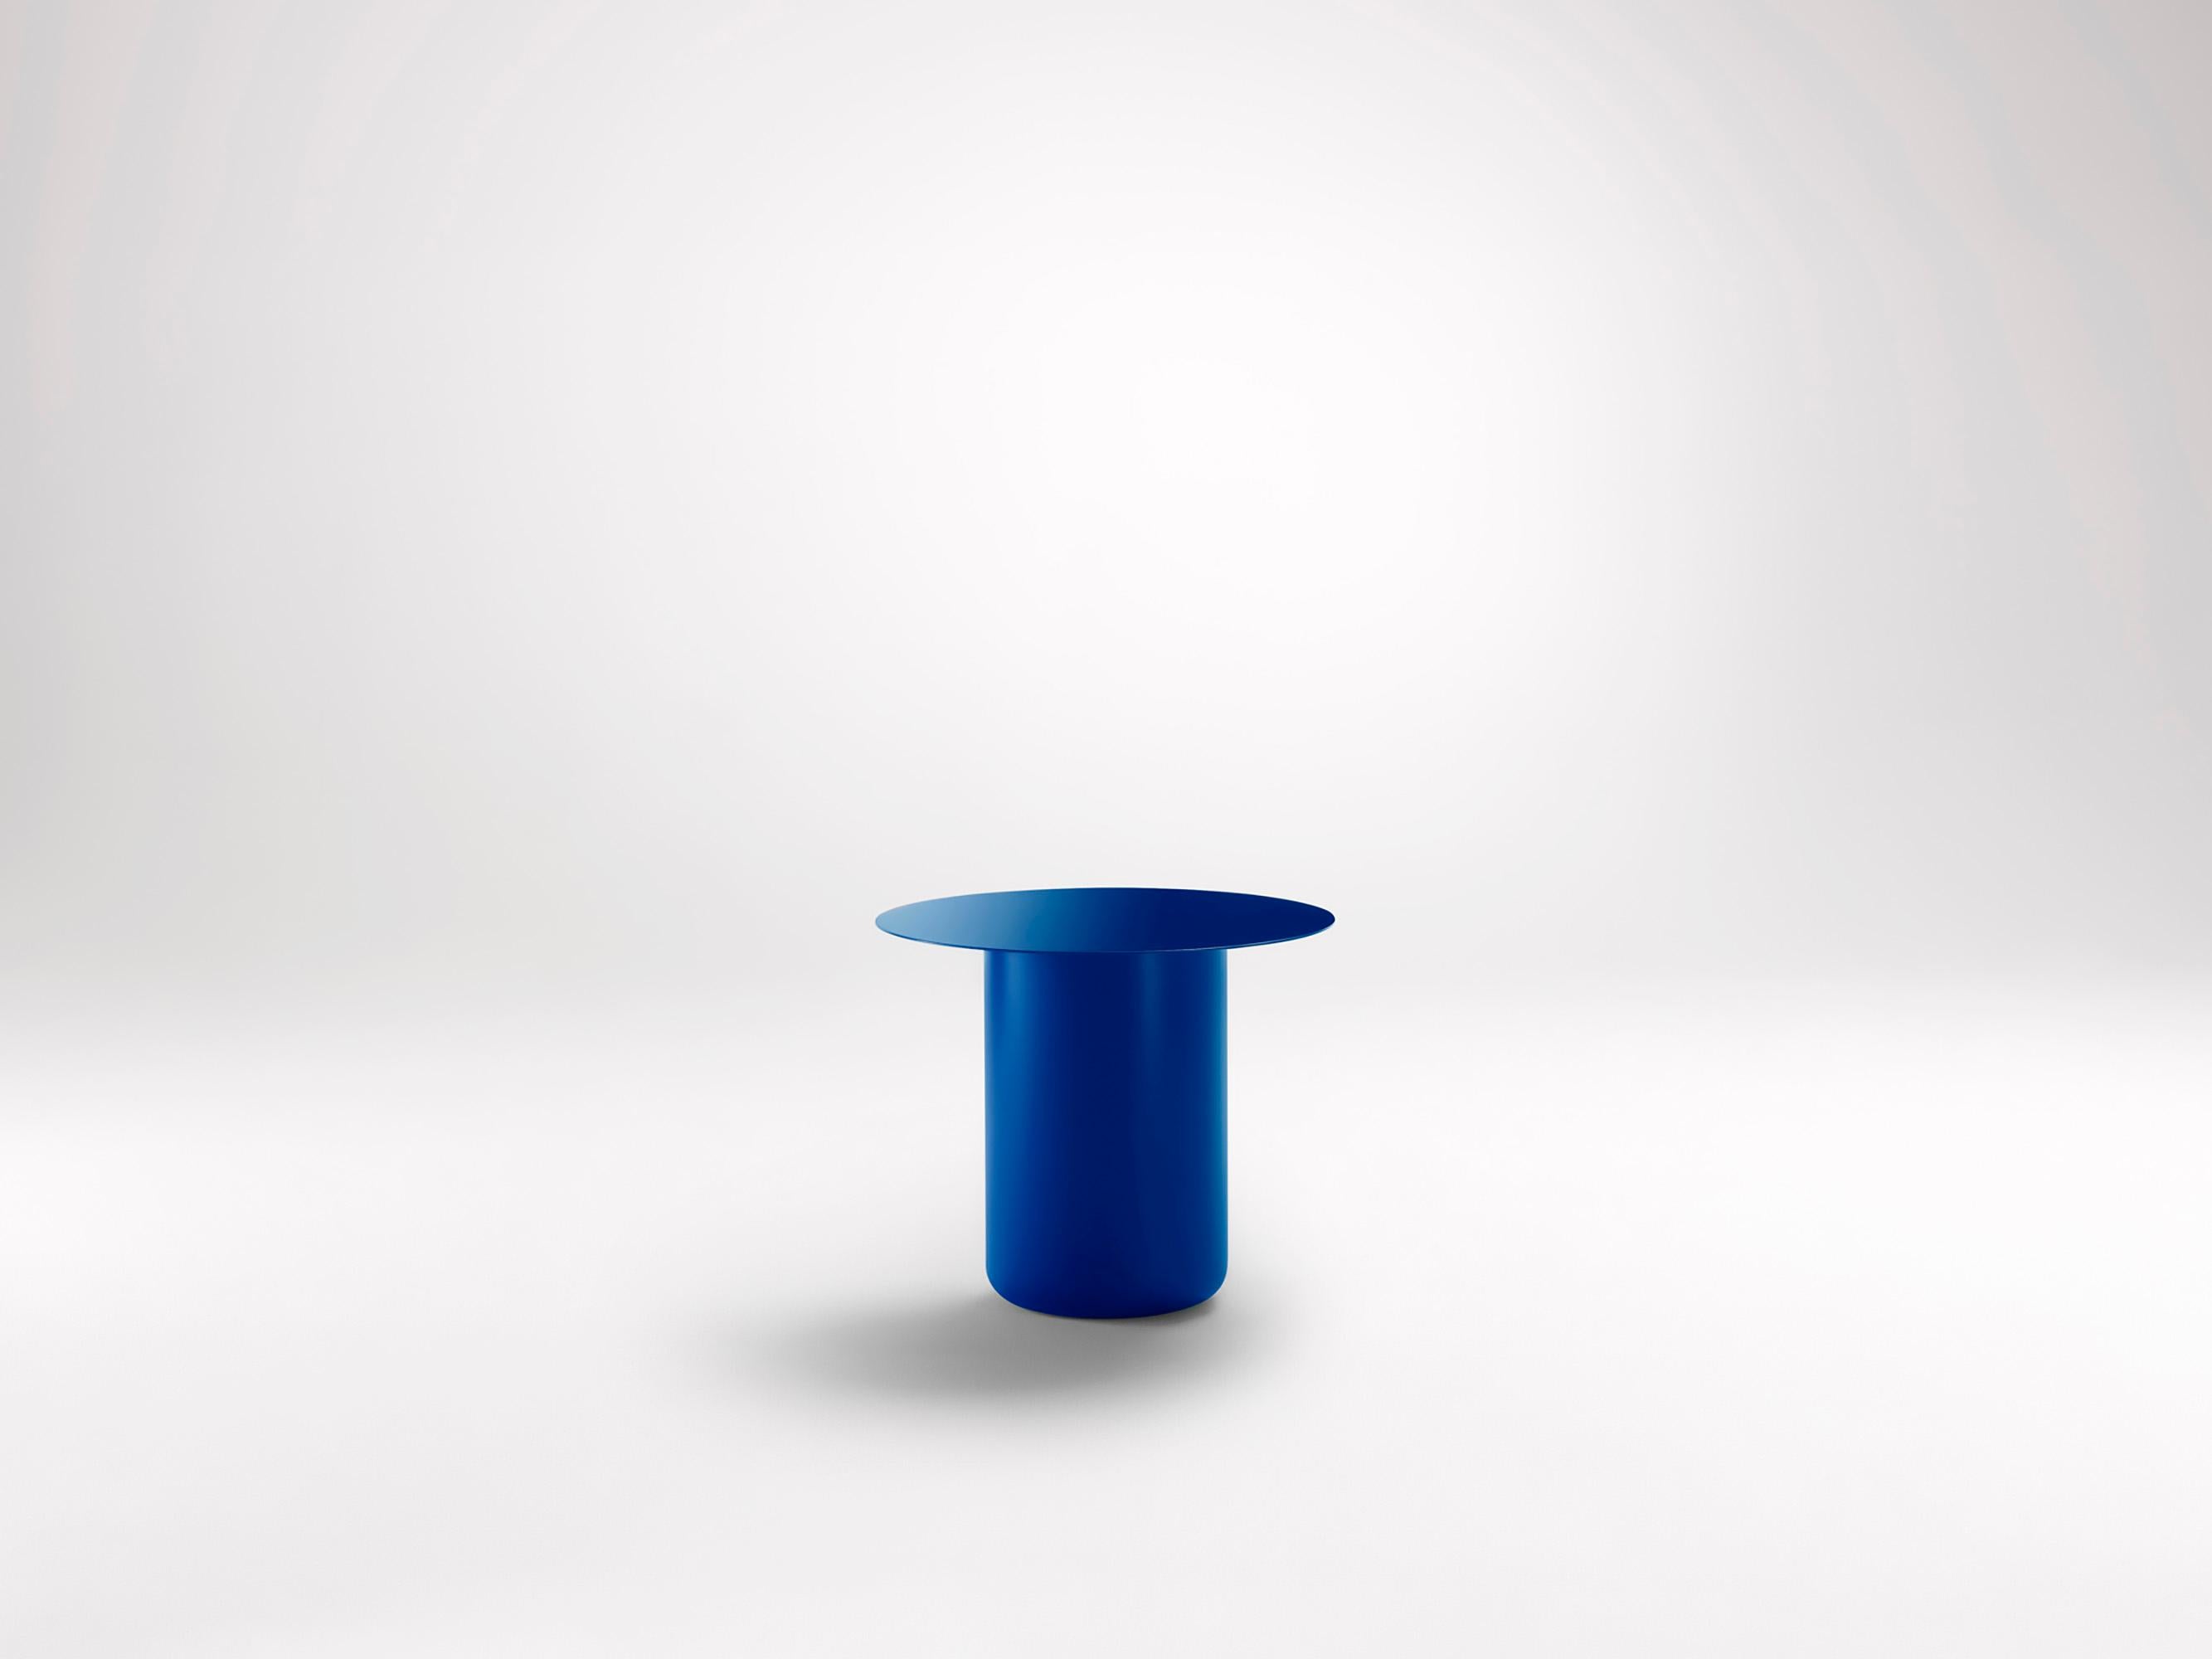 Vivid Blue Tisch 01 von Coco Flip
Abmessungen: T 48 x B 48 x H 32 / 36 / 40 / 42 cm
MATERIALIEN: Baustahl, pulverbeschichtet mit Zinkgrundierung. 
Gewicht: 12 kg

Coco Flip ist ein Studio für Möbel- und Beleuchtungsdesign in Melbourne, das von uns,